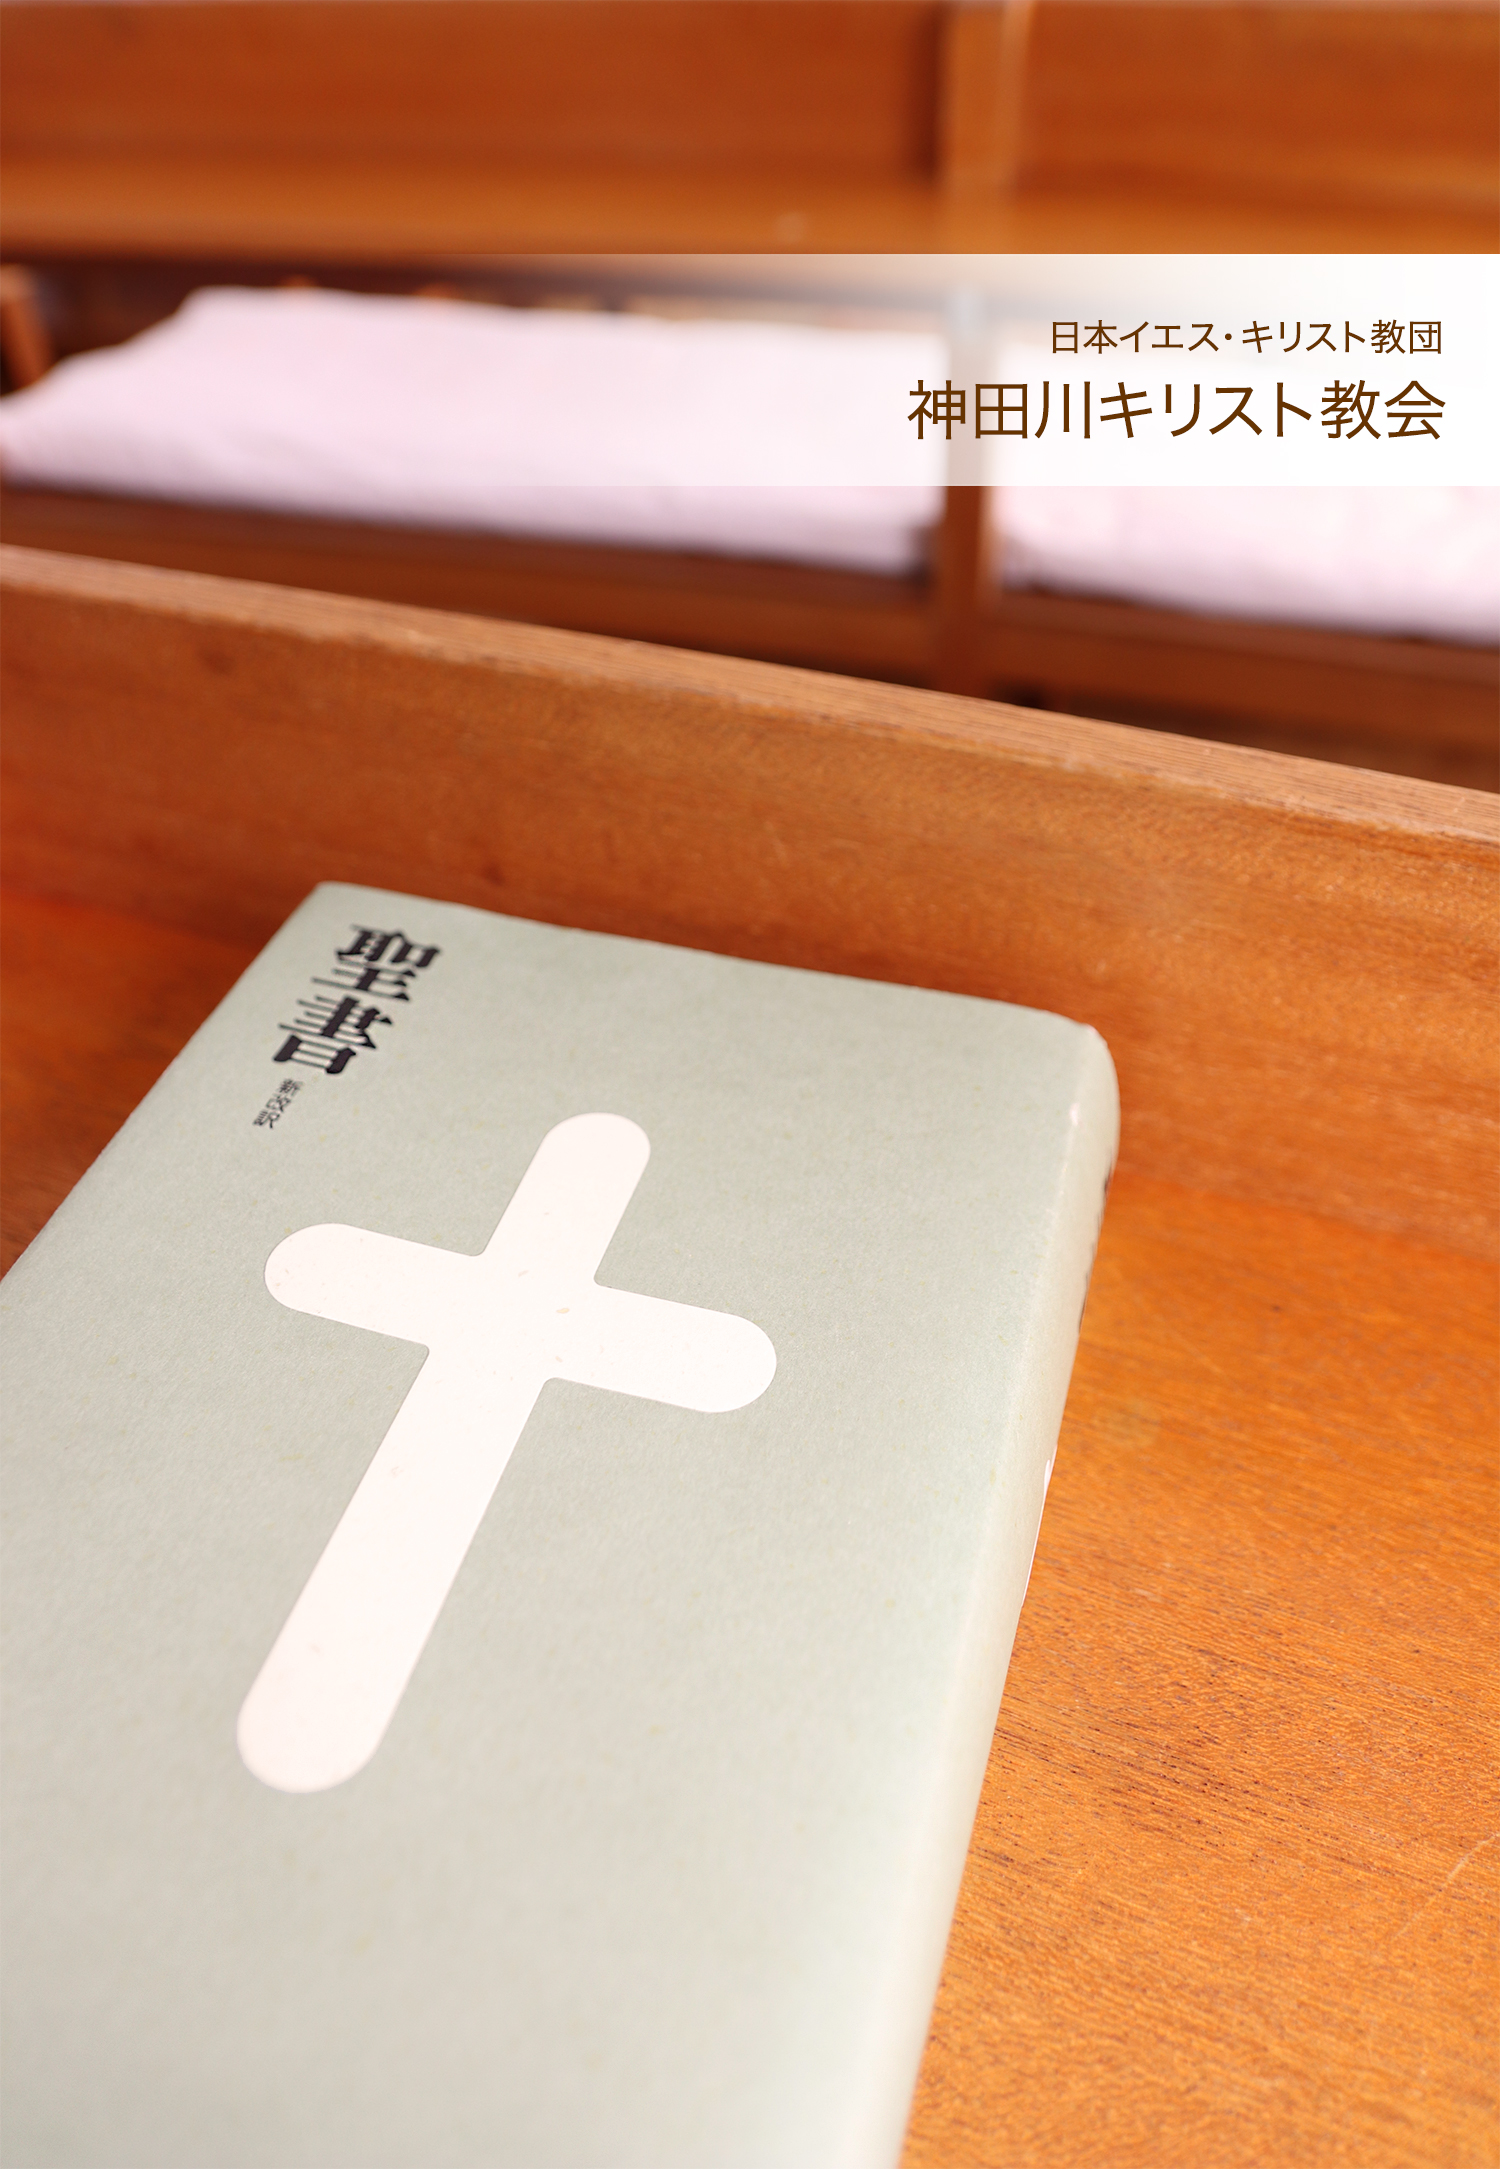 神田川キリスト教会聖書